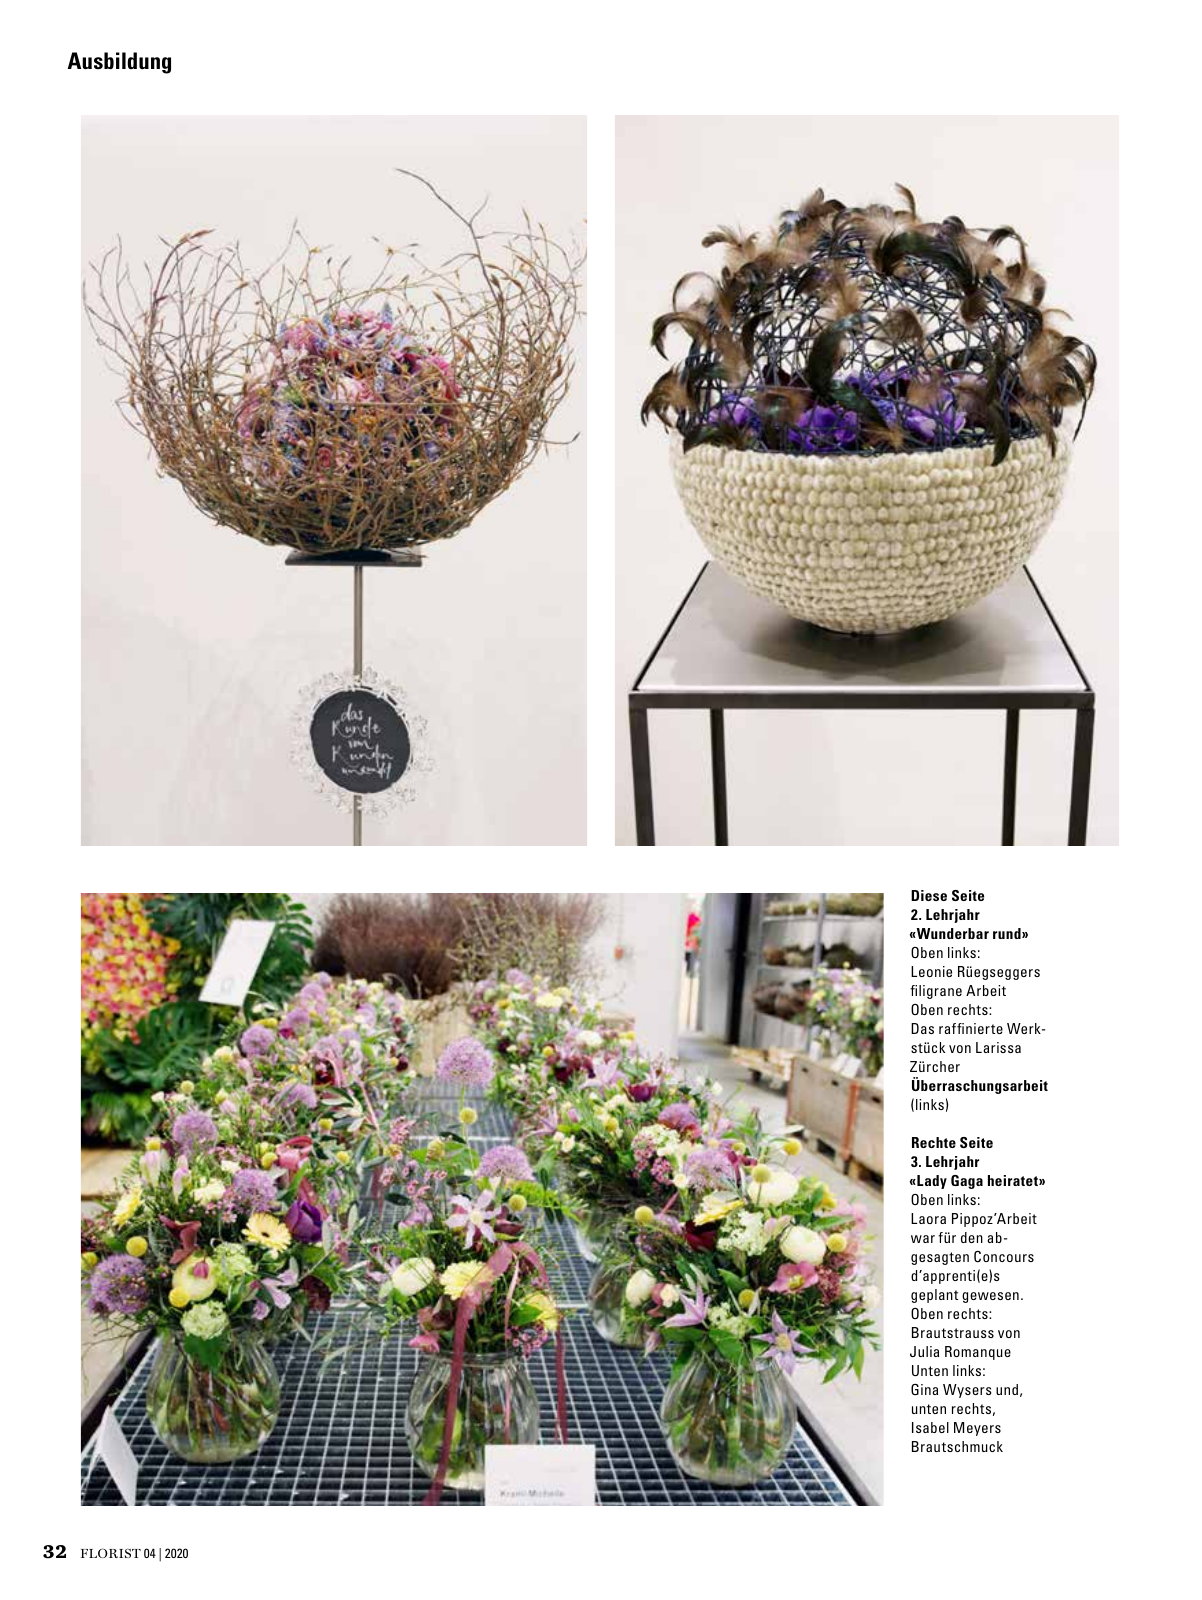 Vorschau Florist - Ausgabe April 2020 Seite 30